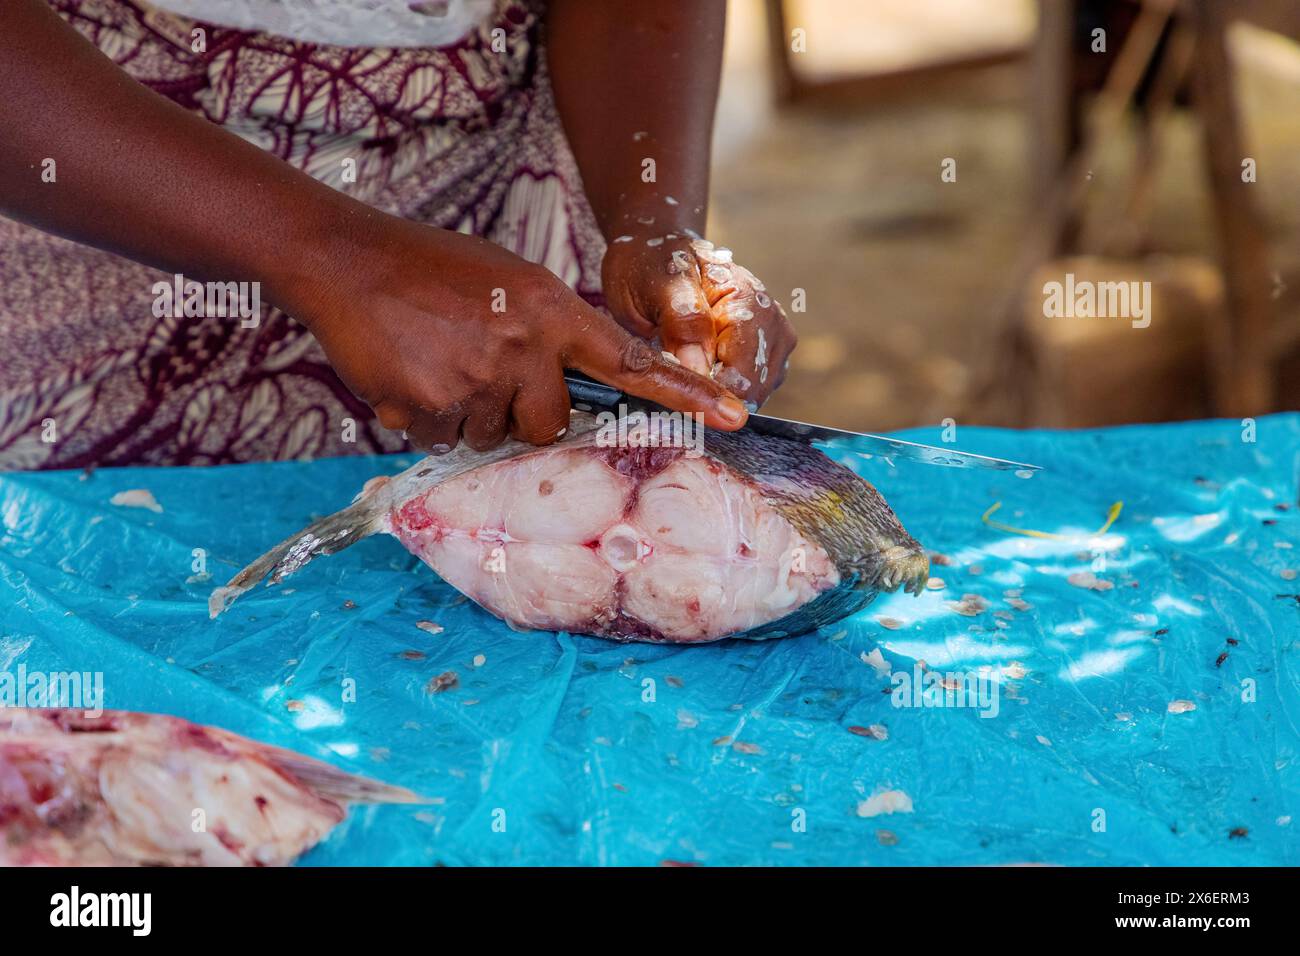 Frischer Fisch, lokaler Markt. Frauen putzen und verkaufen frischen Fisch. Hände und Stücke fischen im Fokus. Lokaler Geschmack. Stockfoto